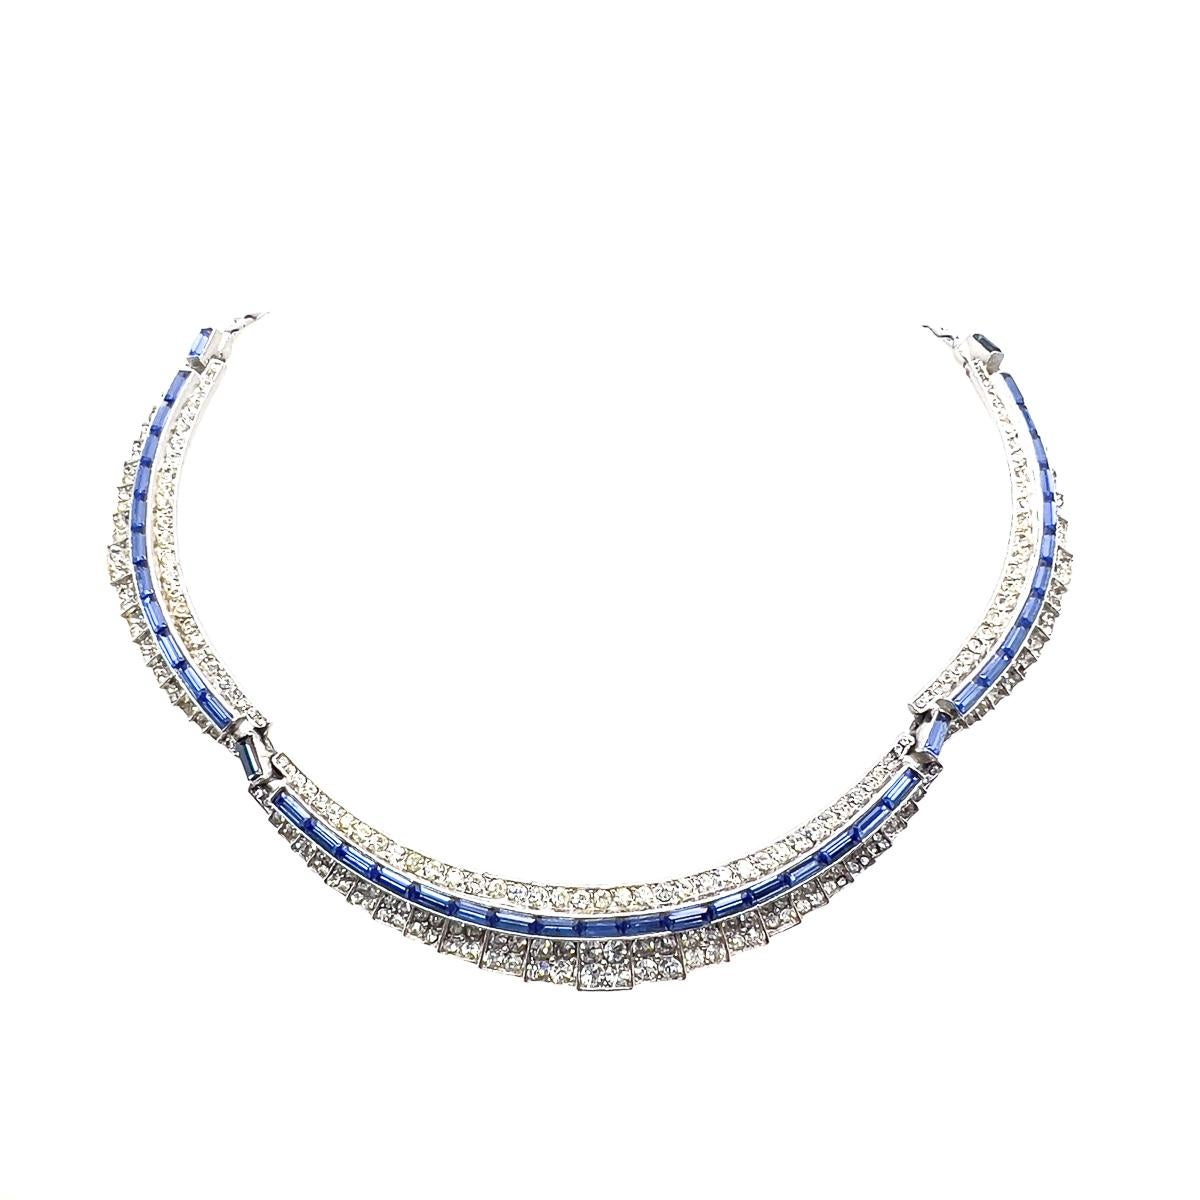 A Vintage Sapphire Crystal Line Collar. So ganz im Stil von Marcel Boucher. Art-Déco-Design vermischt sich mit dem Cocktail-Glamour der 1950er Jahre. Ein schlichter Abschluss, der sich als fesselnd und zeitlos erweisen wird.
Eine unsignierte